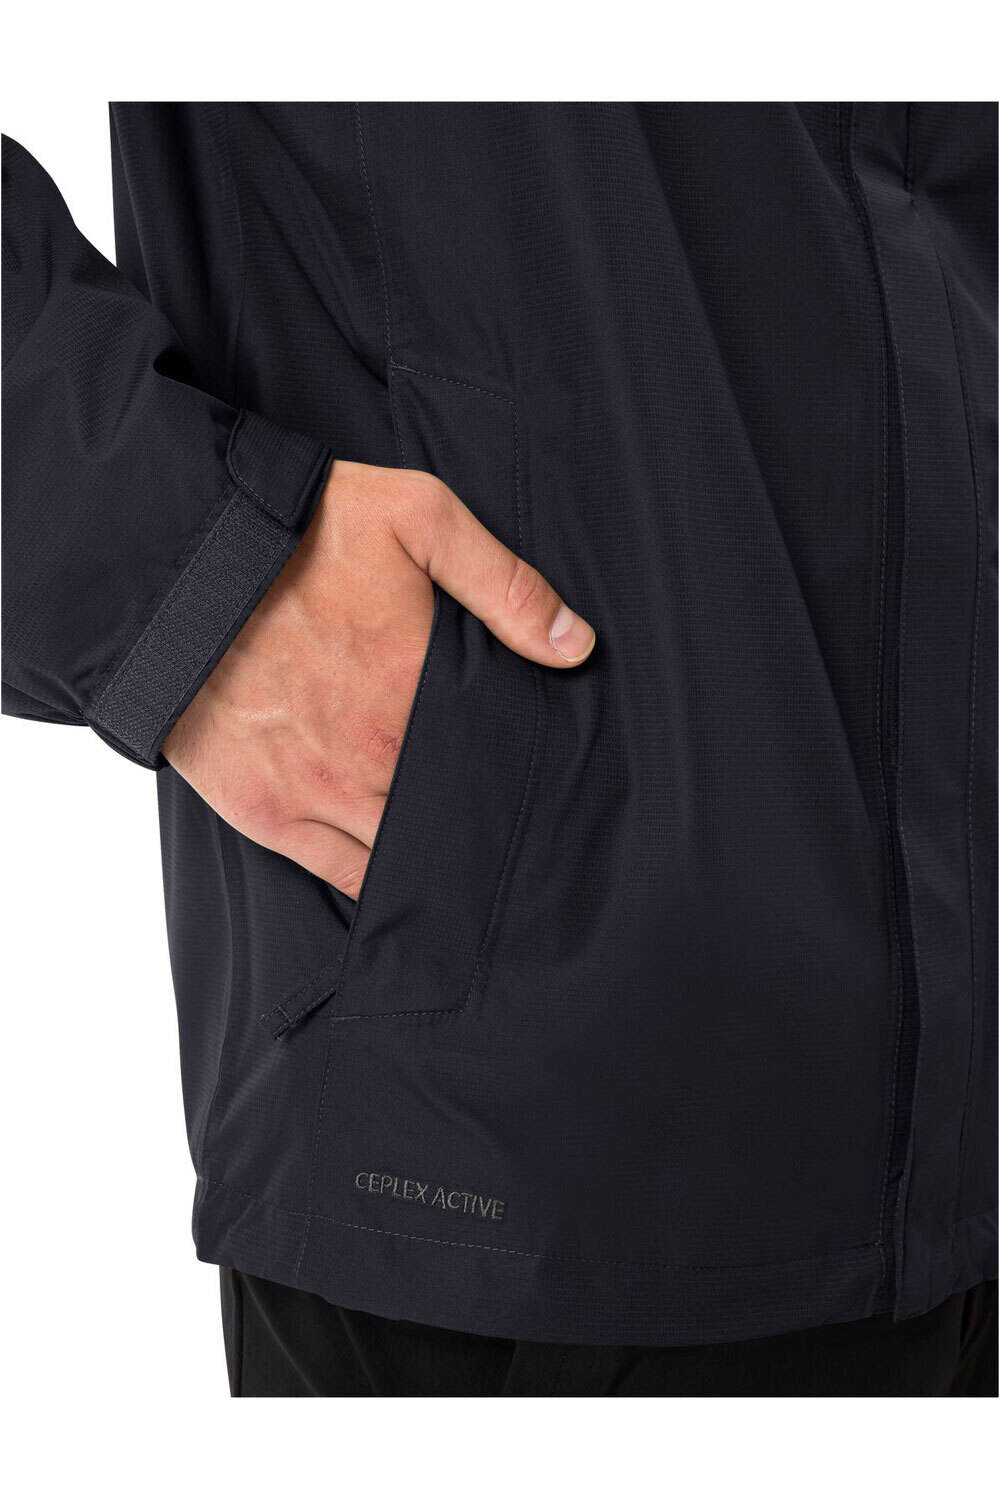 Vaude chaqueta impermeable hombre Men's Escape Light Jacket 03